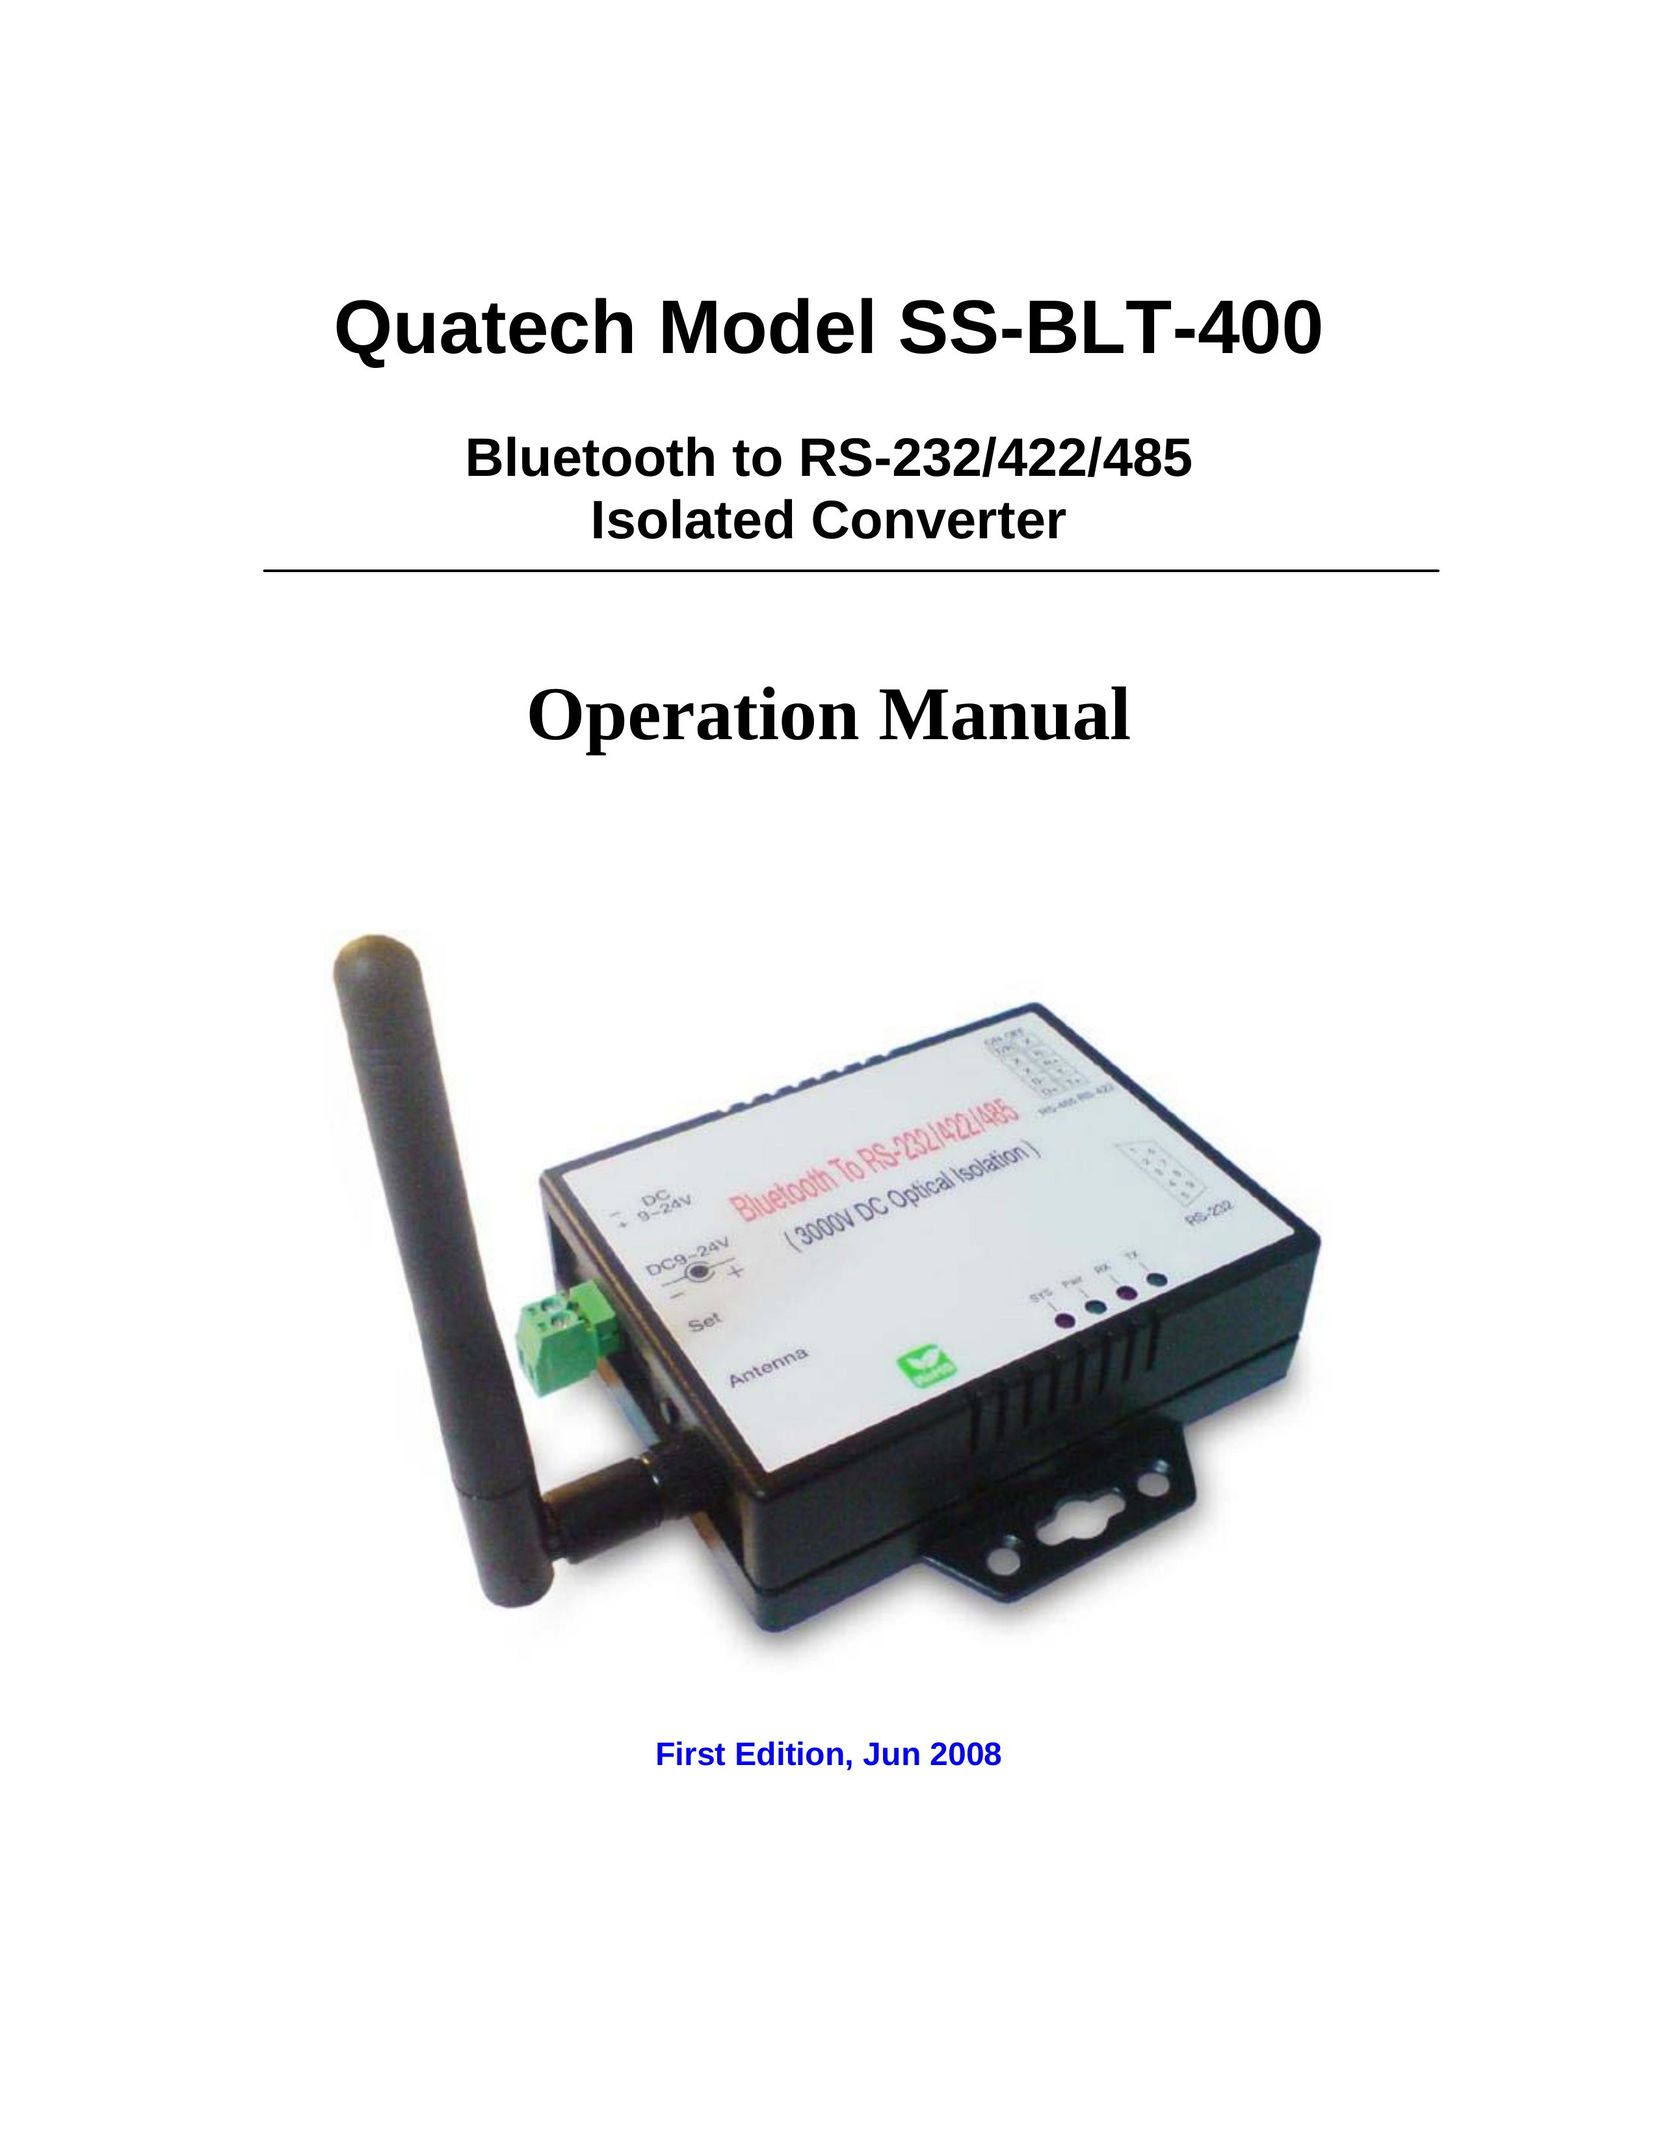 Quatech SS-BLT-400 Network Card User Manual